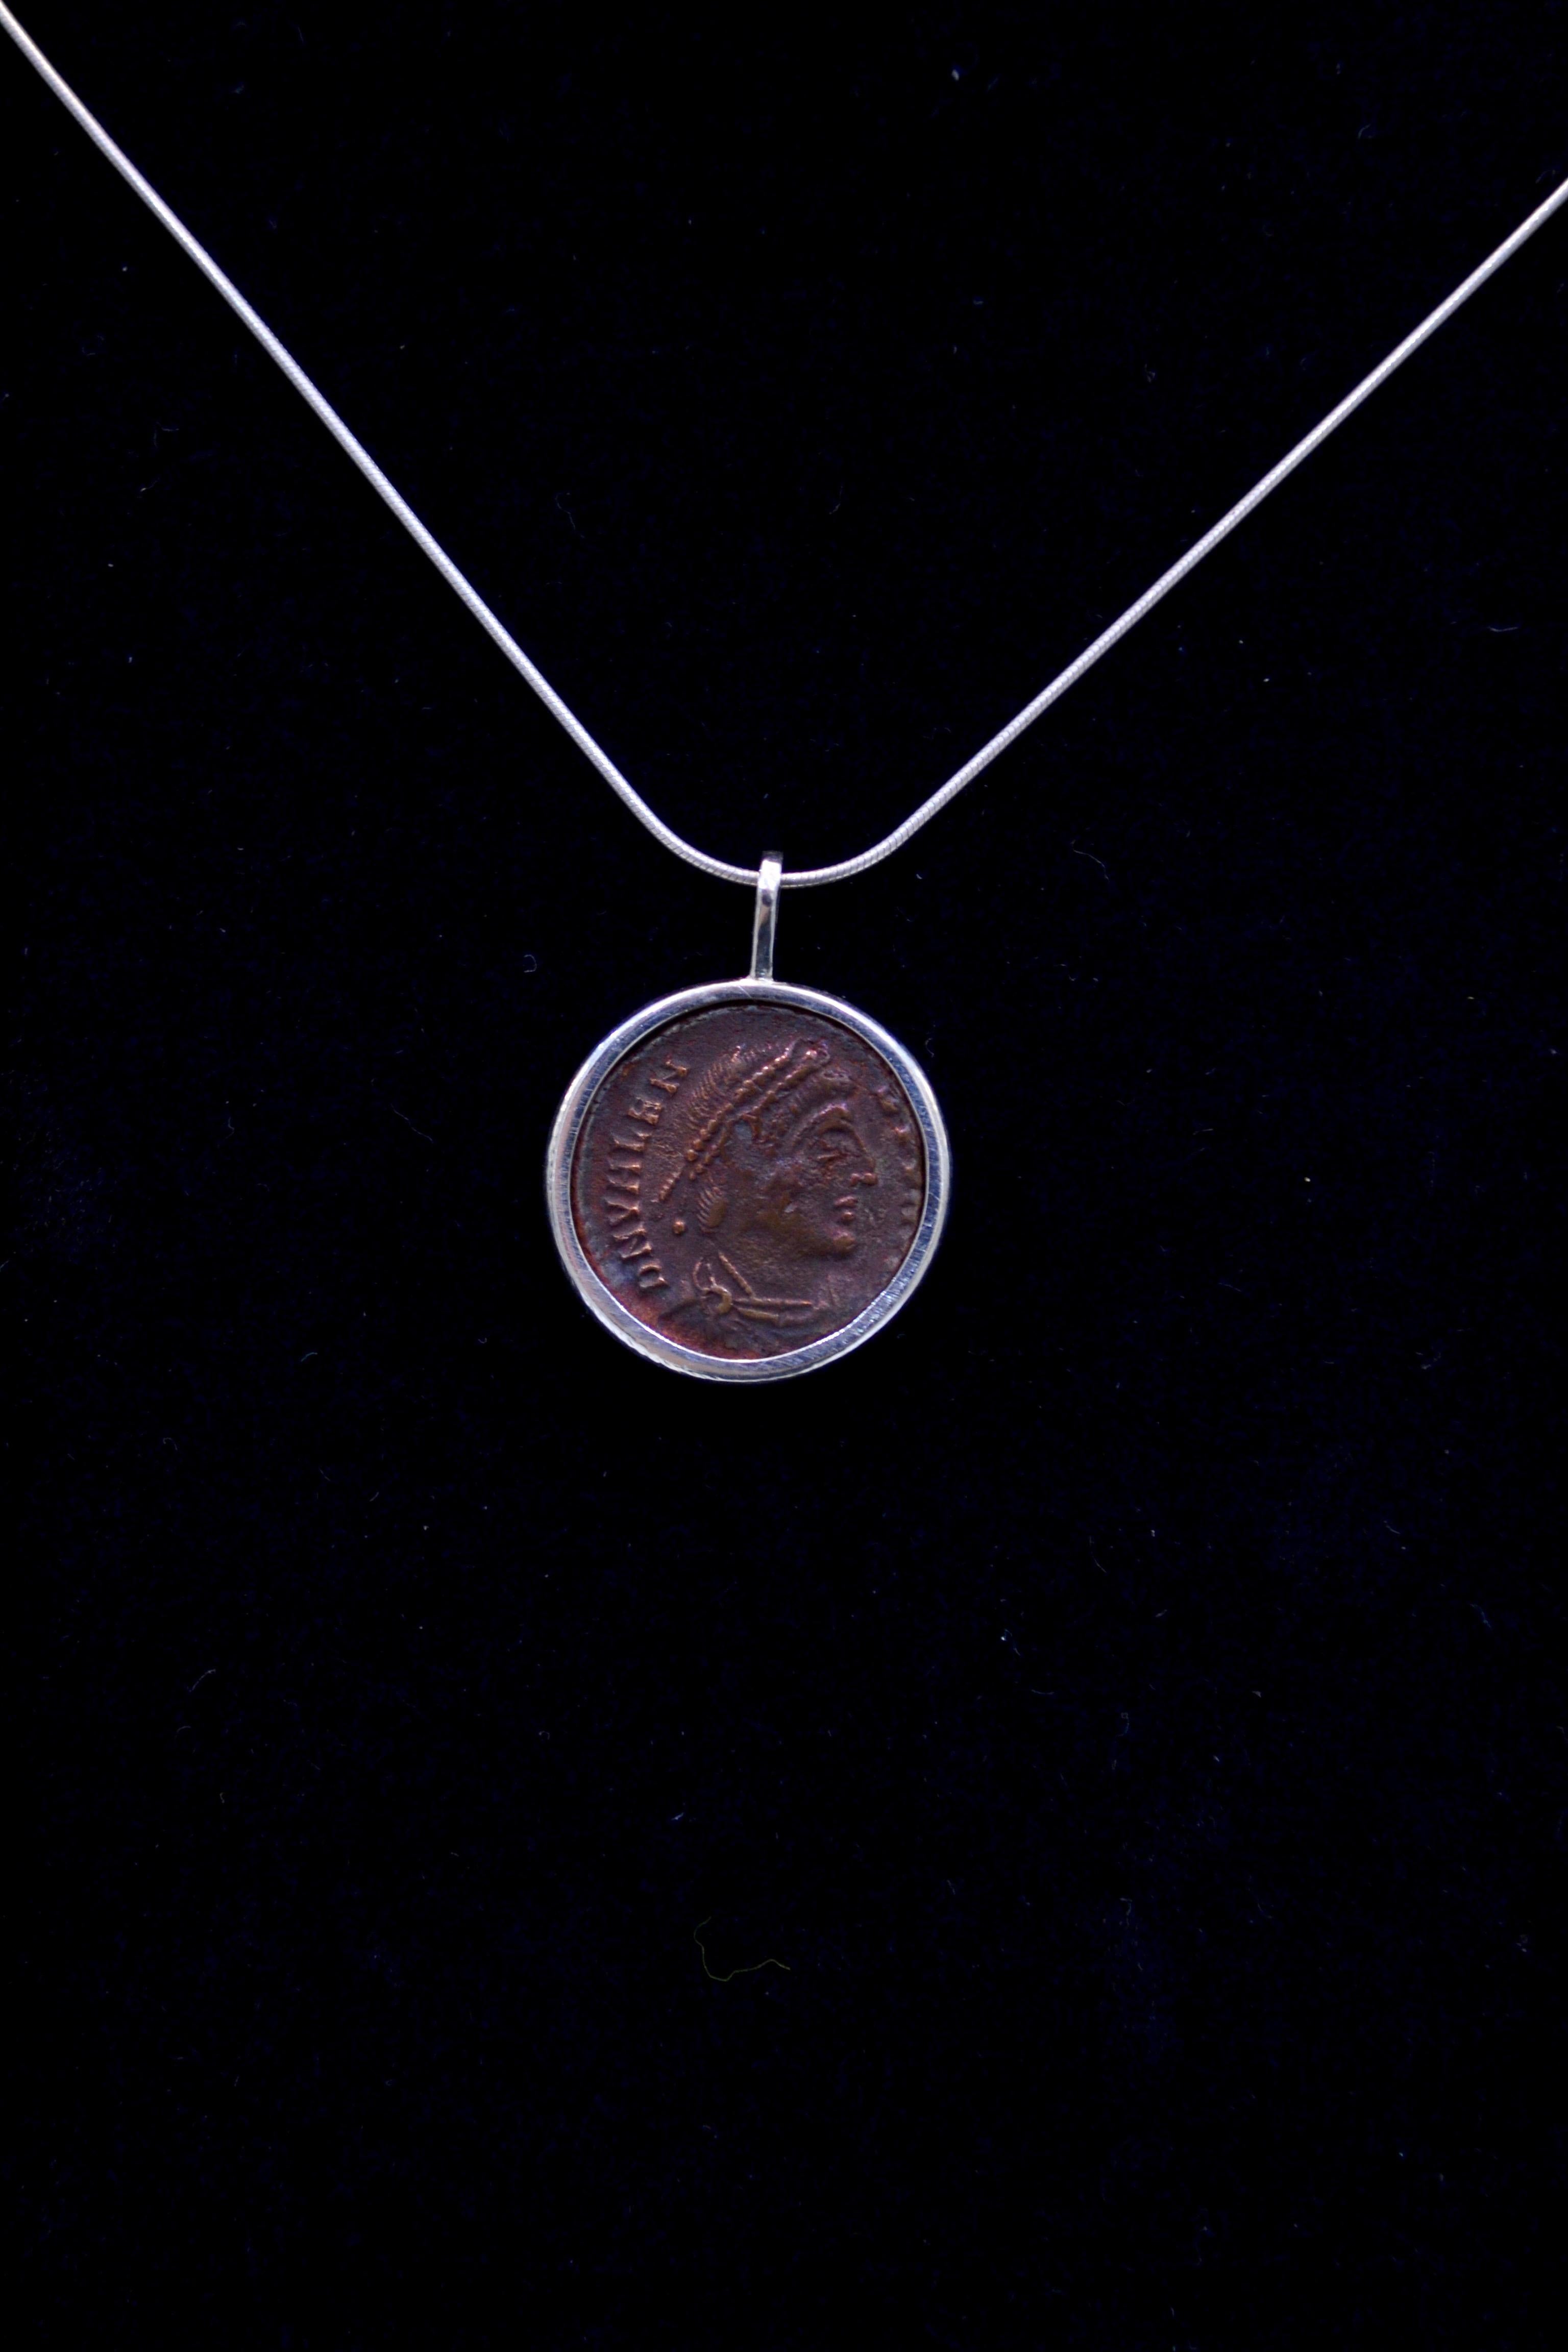 Authentische römische Bronzemünze Ca. 364-378 CE montiert auf zeitgenössischen Silber Halskette. Bereit, getragen zu werden!

Fully Flavius Julius Valens Augustus erhielt von seinem Bruder Valentinian I. nach dessen Thronbesteigung die Osthälfte des